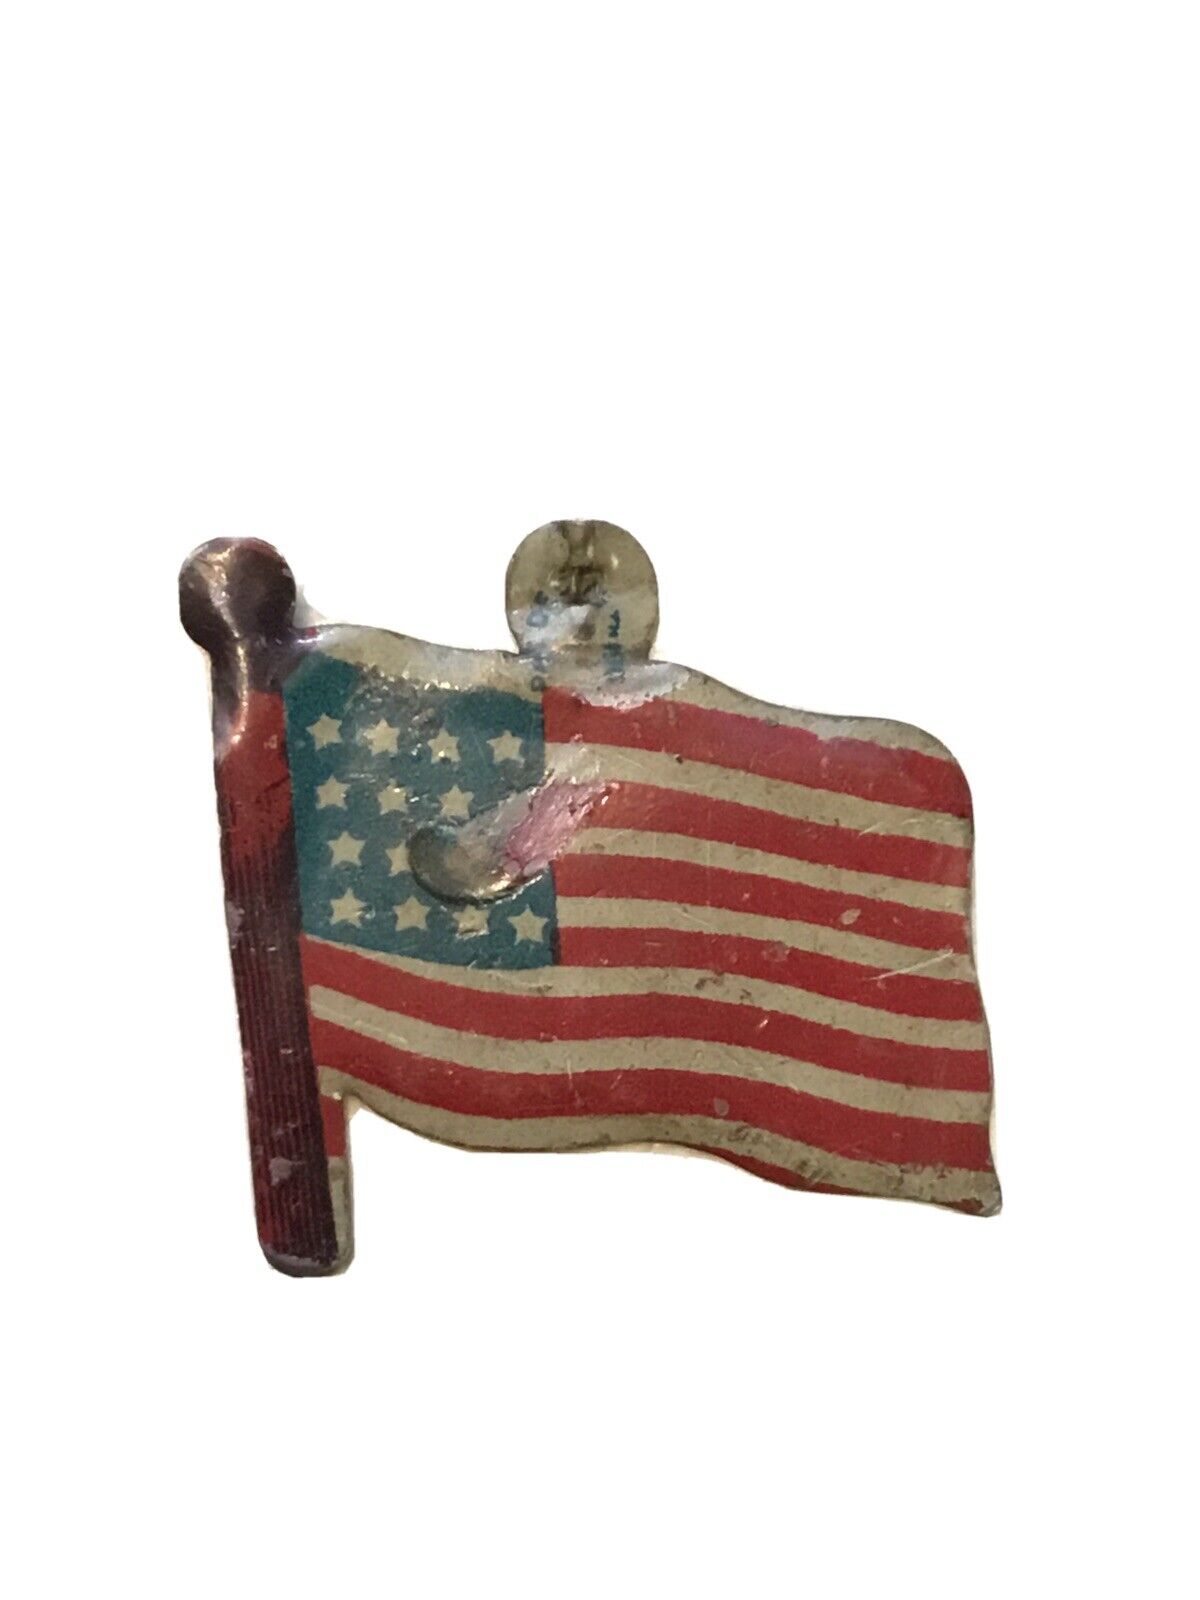 RARE early 1900’s  US FLAG  Metal badge PAT DATE 1900’s